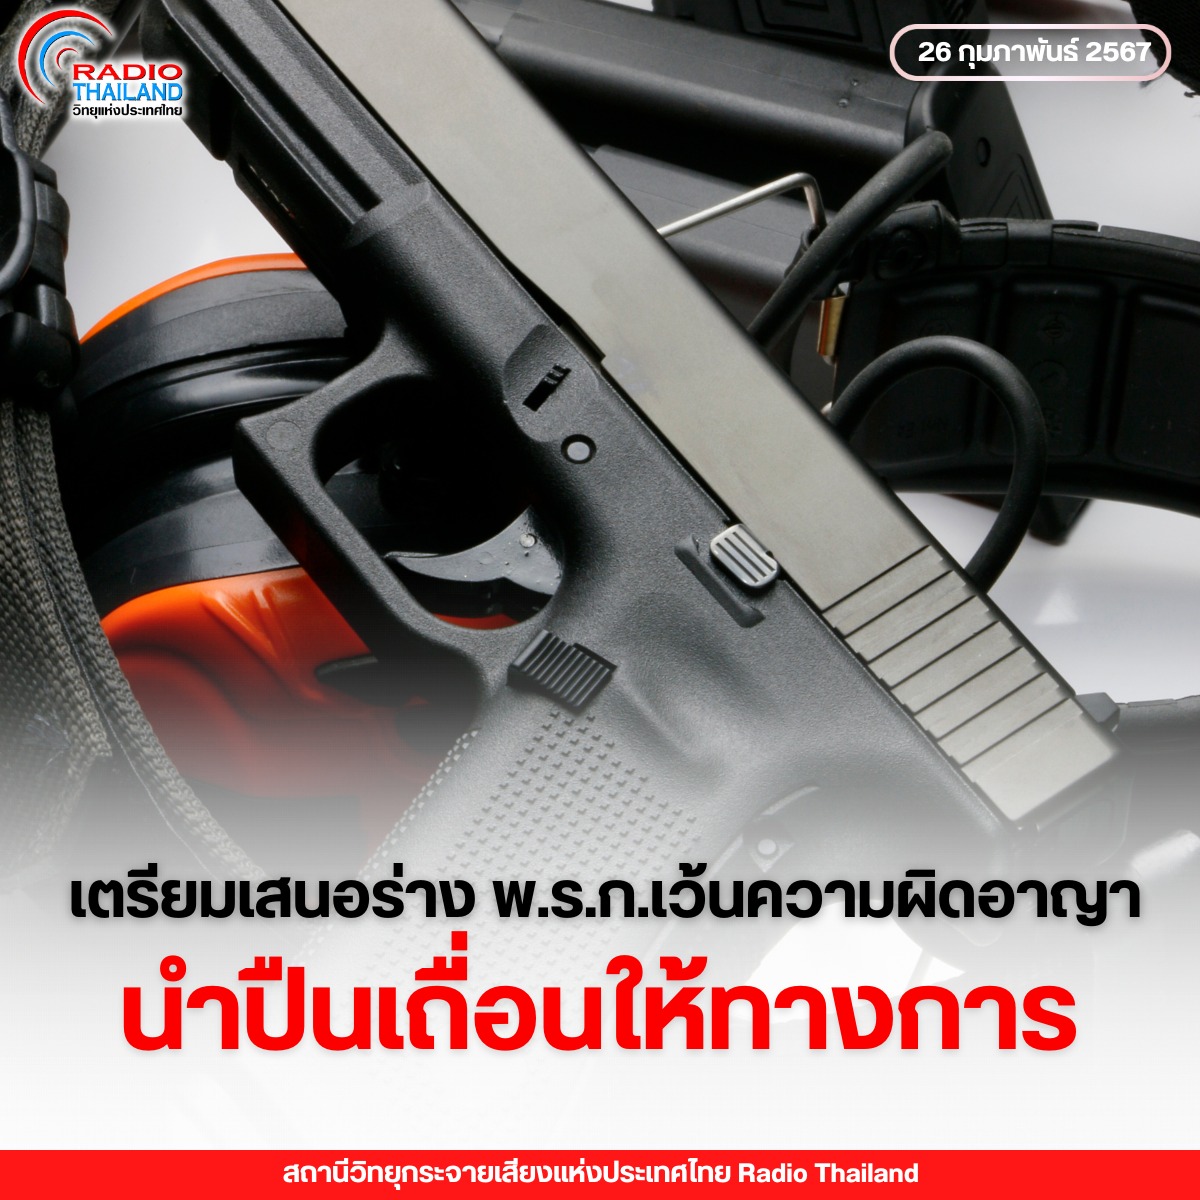 กระทรวงมหาดไทย เตรียมเสนอร่าง พ.ร.ก.เว้นความผิดอาญาผู้นำส่งปืนเถื่อนให้ทางการ เสนอ ครม. พิจารณา เพื่อควบคุมอาวุธปืนเป็นกรณีเร่งด่วน